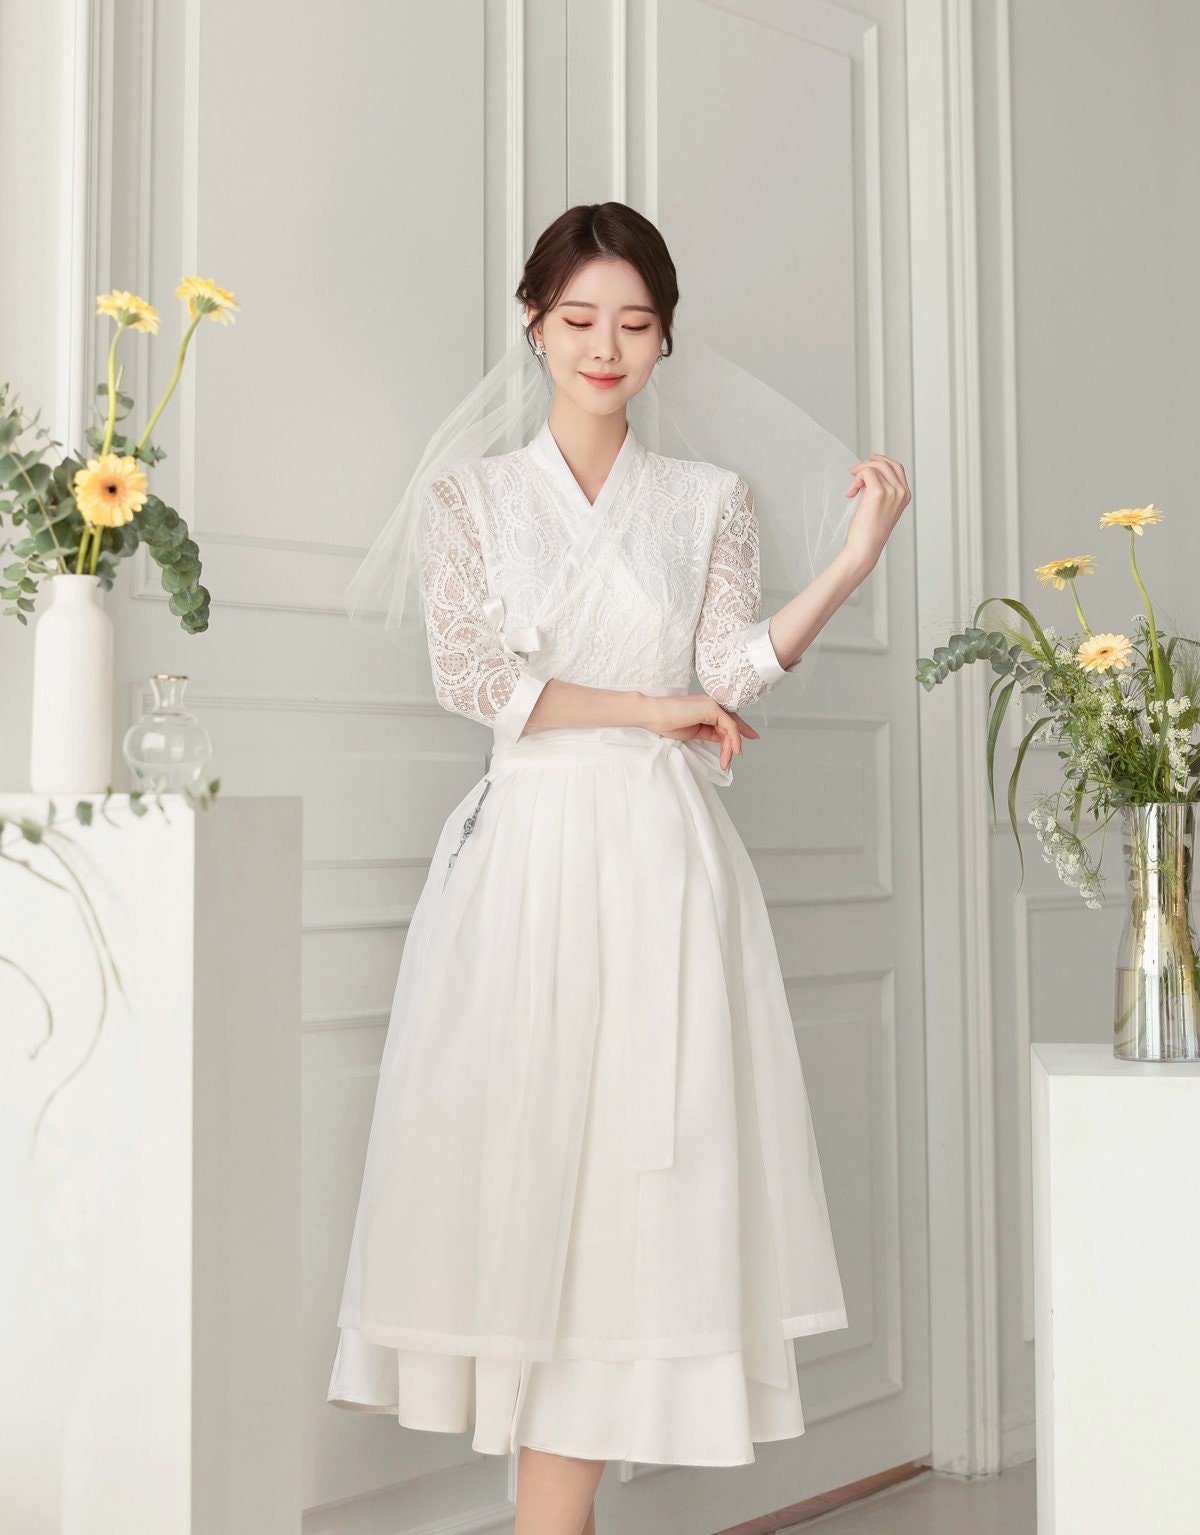 11+ Korean Bridal Dress